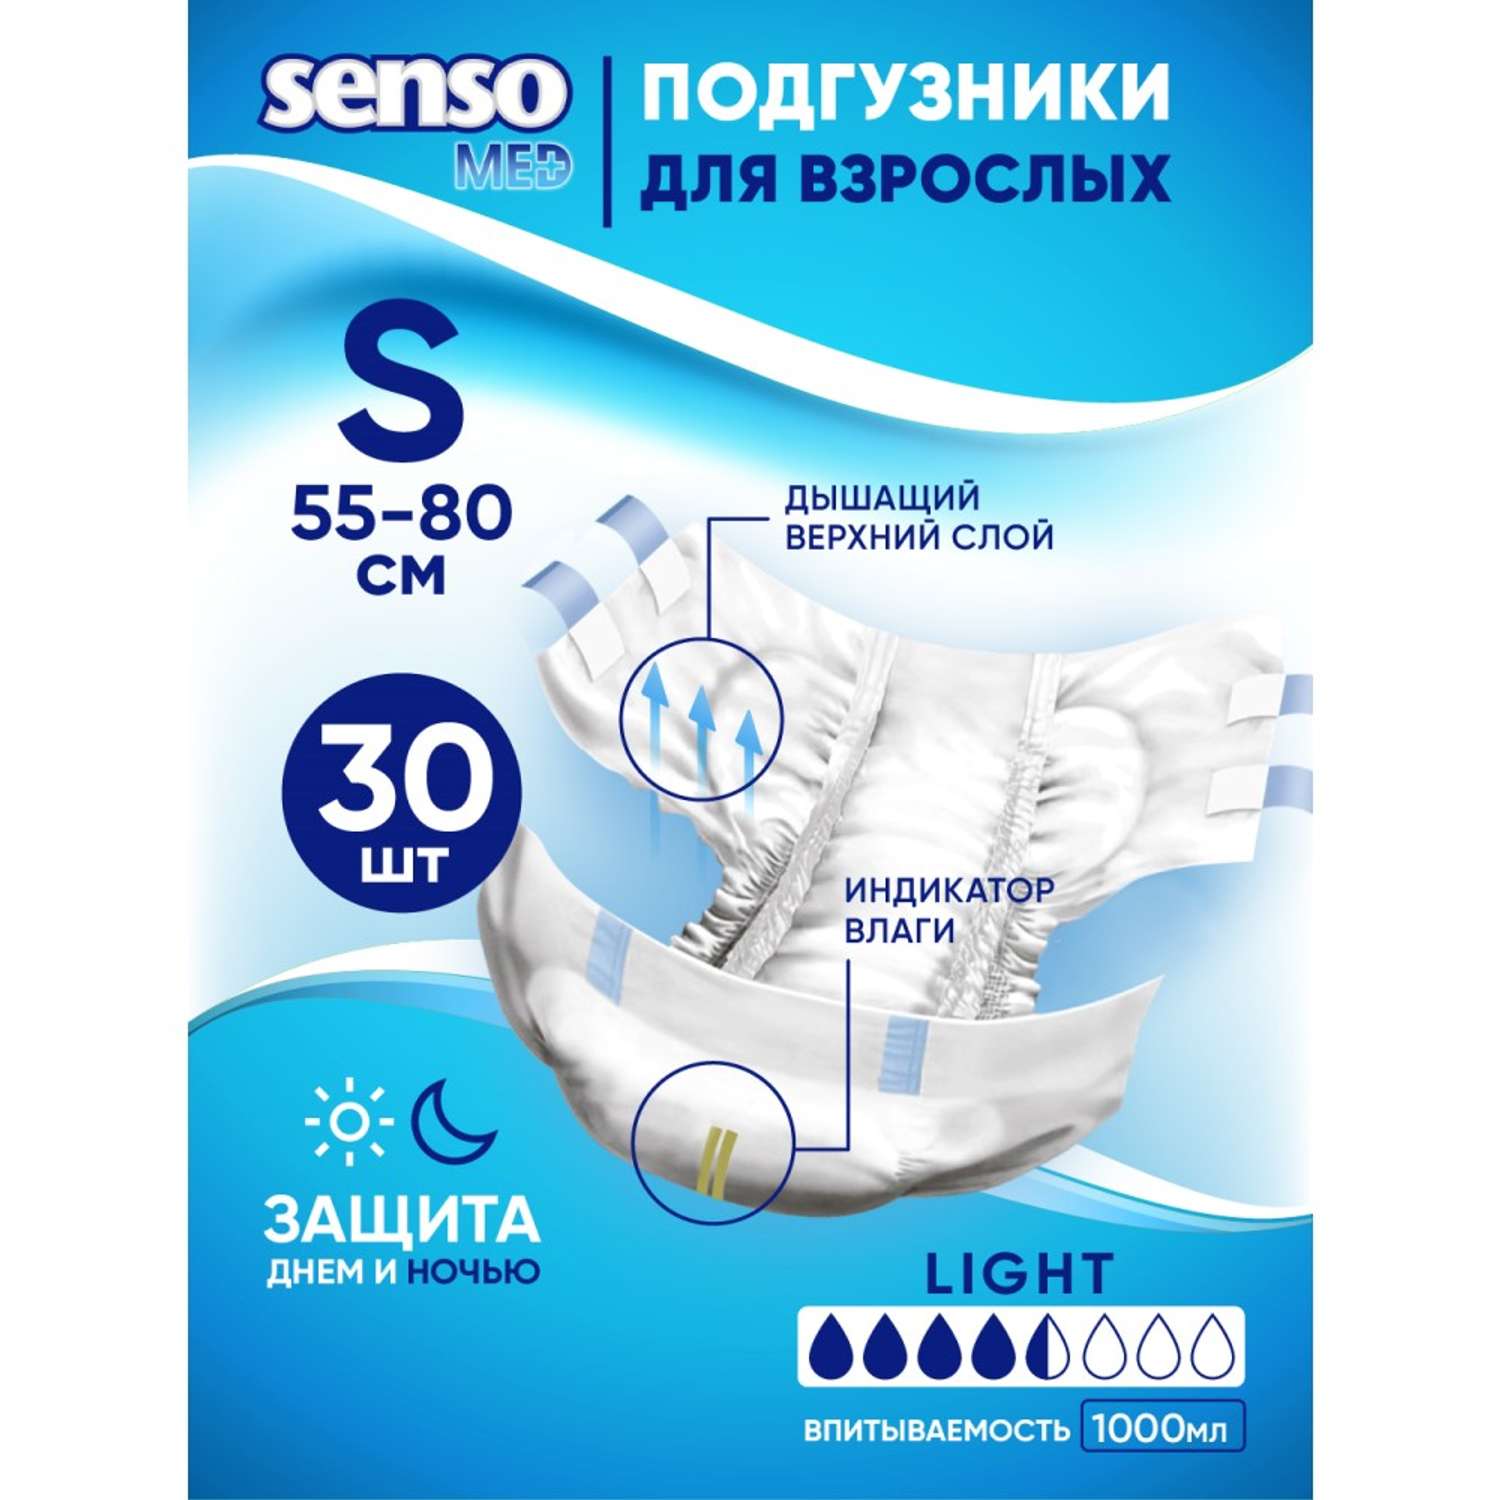 Подгузники для взрослых SENSO MED Light S 55-80 см 30 шт - фото 1